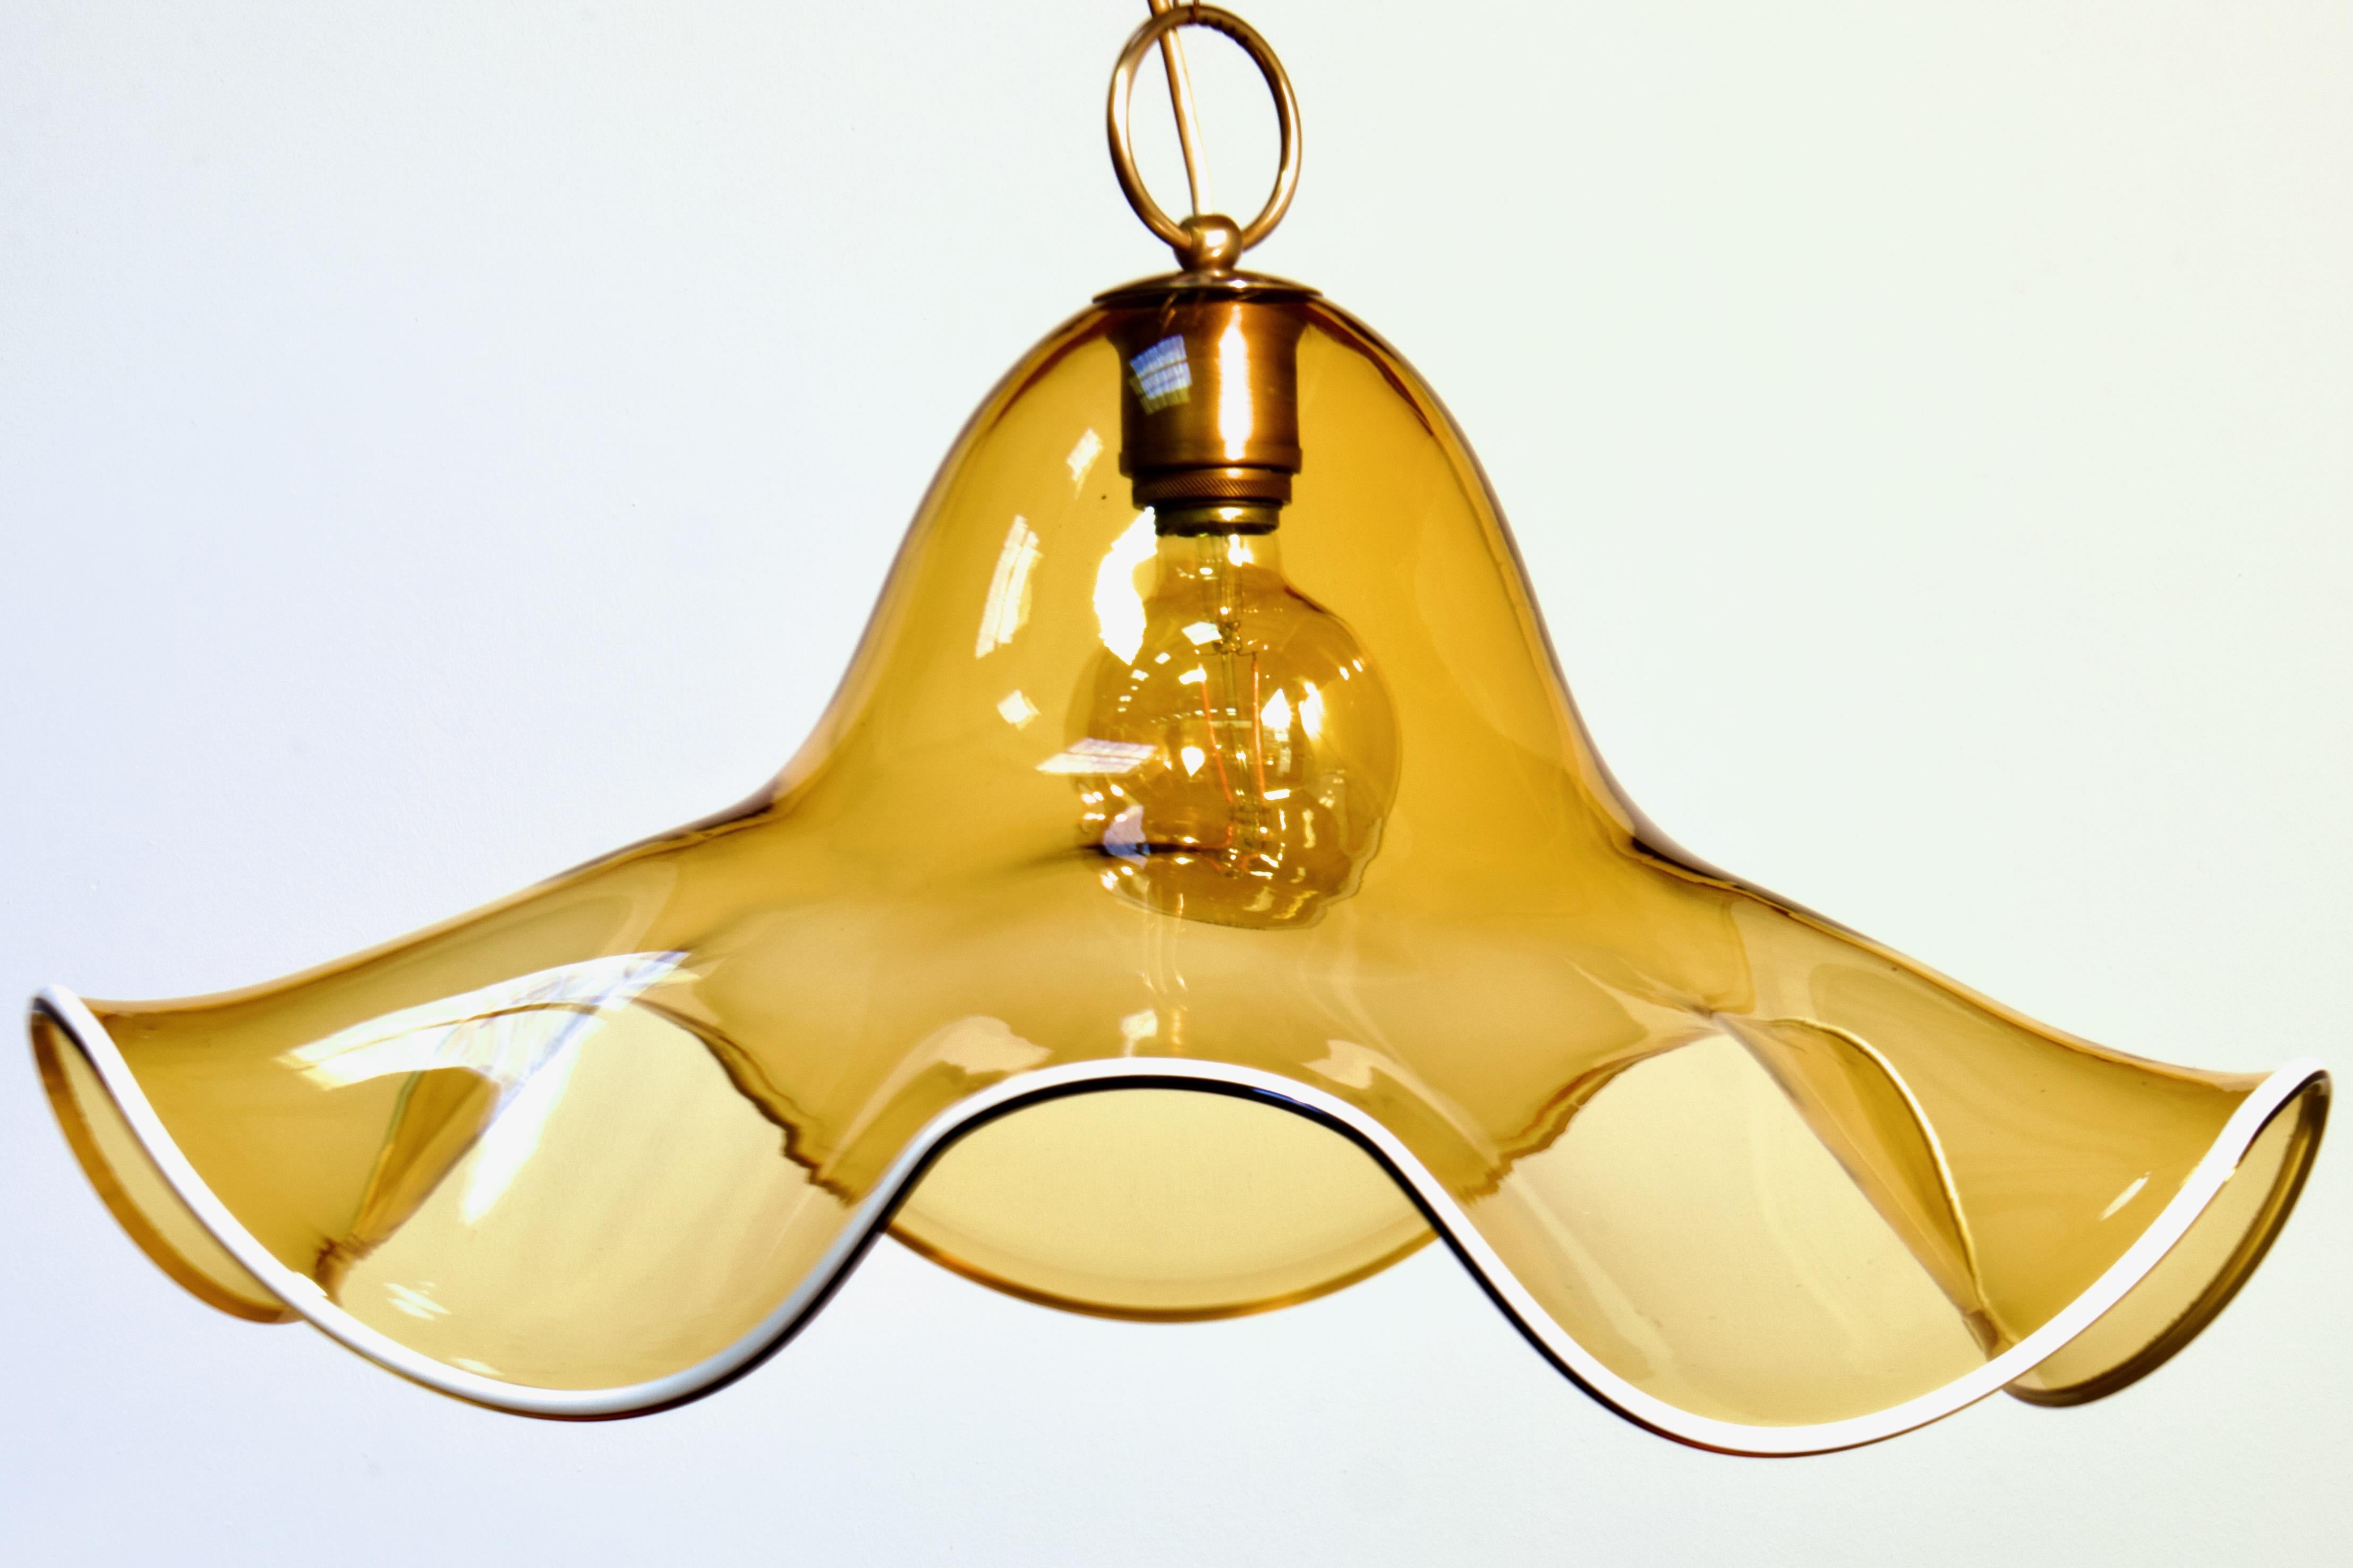 Grande (24,5 pollici di diametro) lampada a sospensione floreale organica moderna del Mid-Century italiano degli anni '70 di La Murrina, proveniente da Murano. 

Formata da un'unica grande e spessa lastra di vetro trasparente soffiato a mano, con